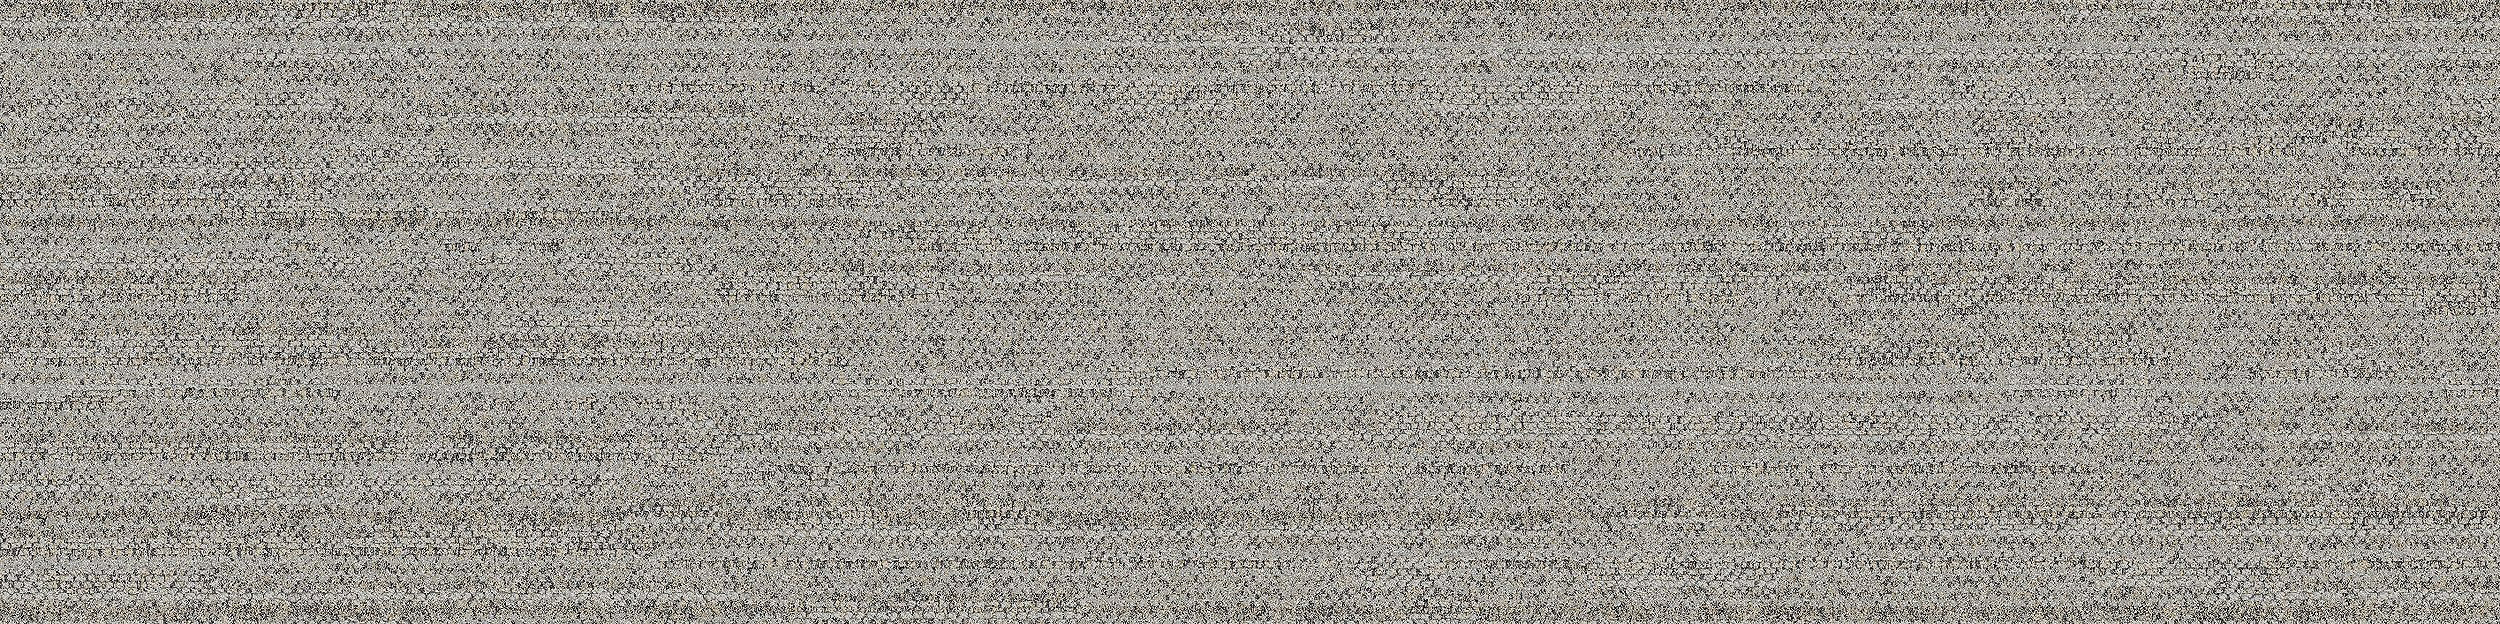 WW880 Carpet Tile In Linen Loom imagen número 8